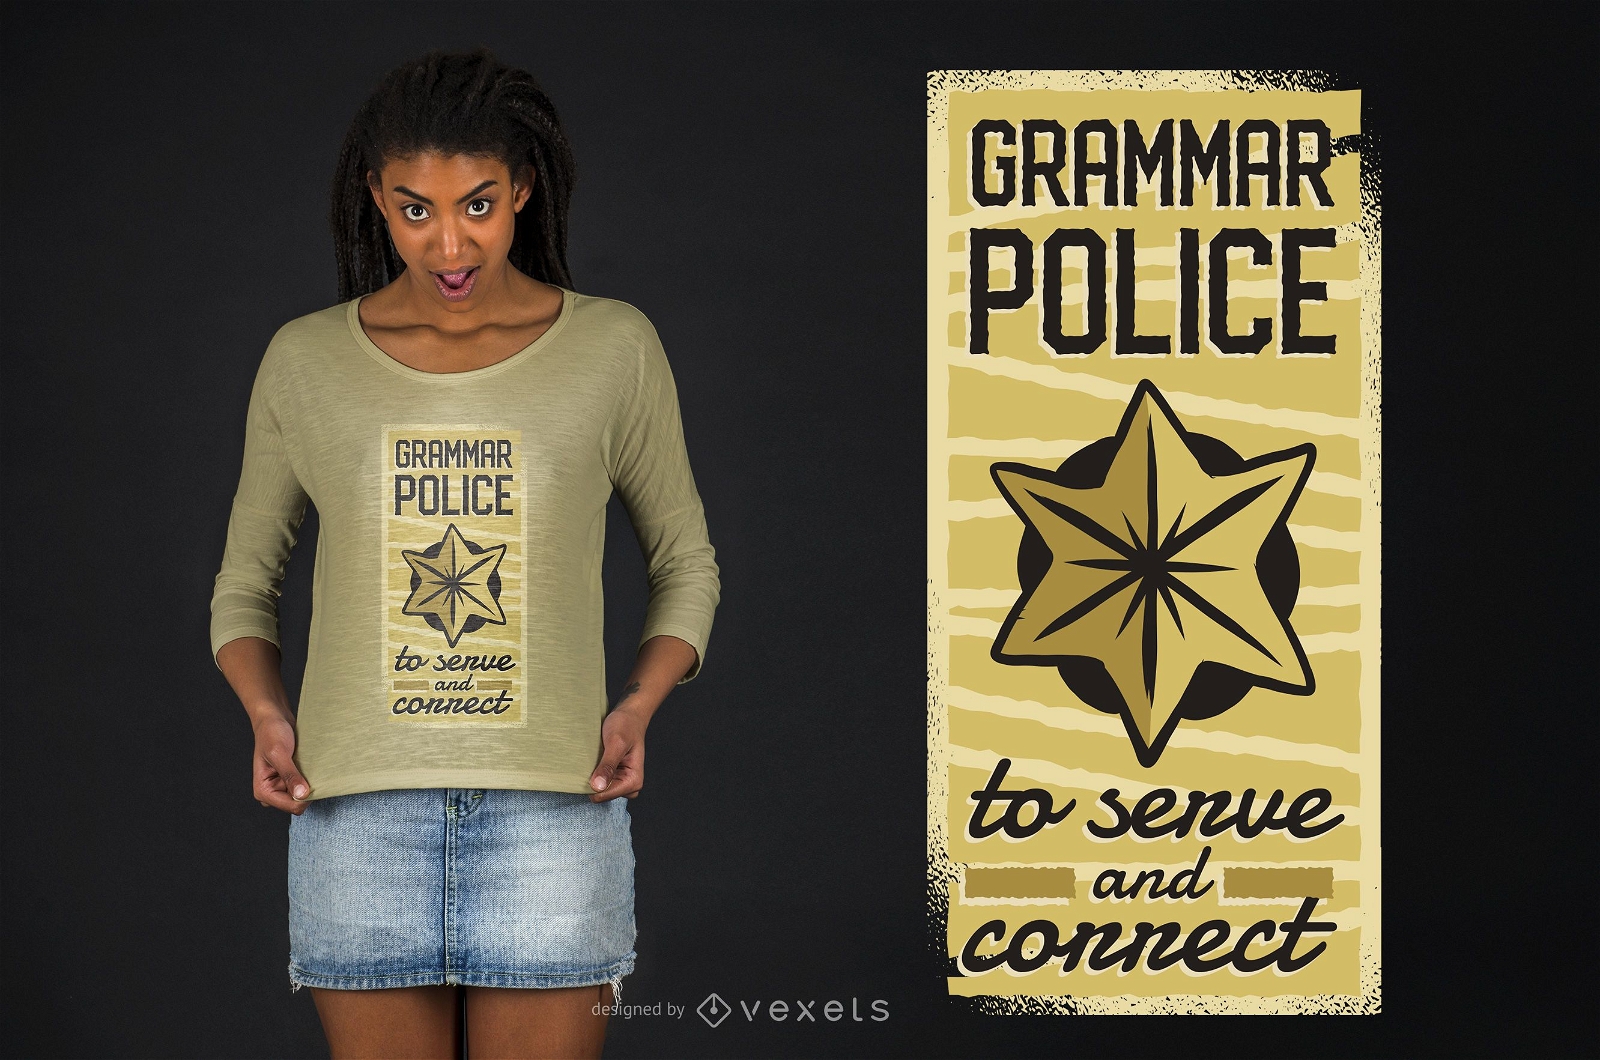 Dise?o de camiseta Grammar Police